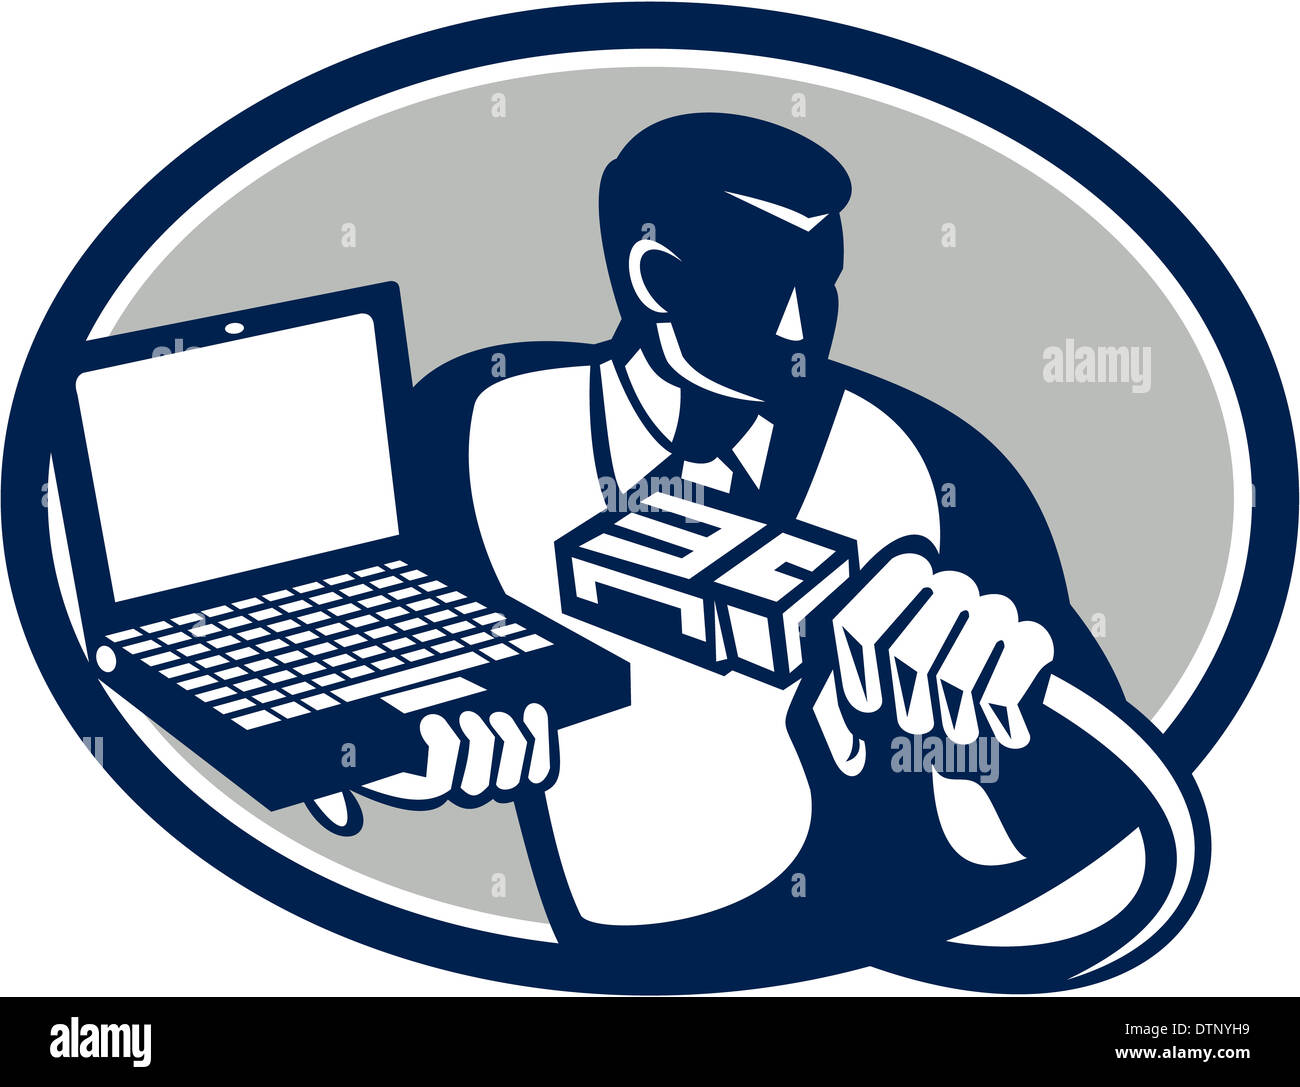 Illustrazione del tecnico del computer repairman geek tenendo il cavo di rete e laptop notebook computer fatto in stile retrò. Foto Stock